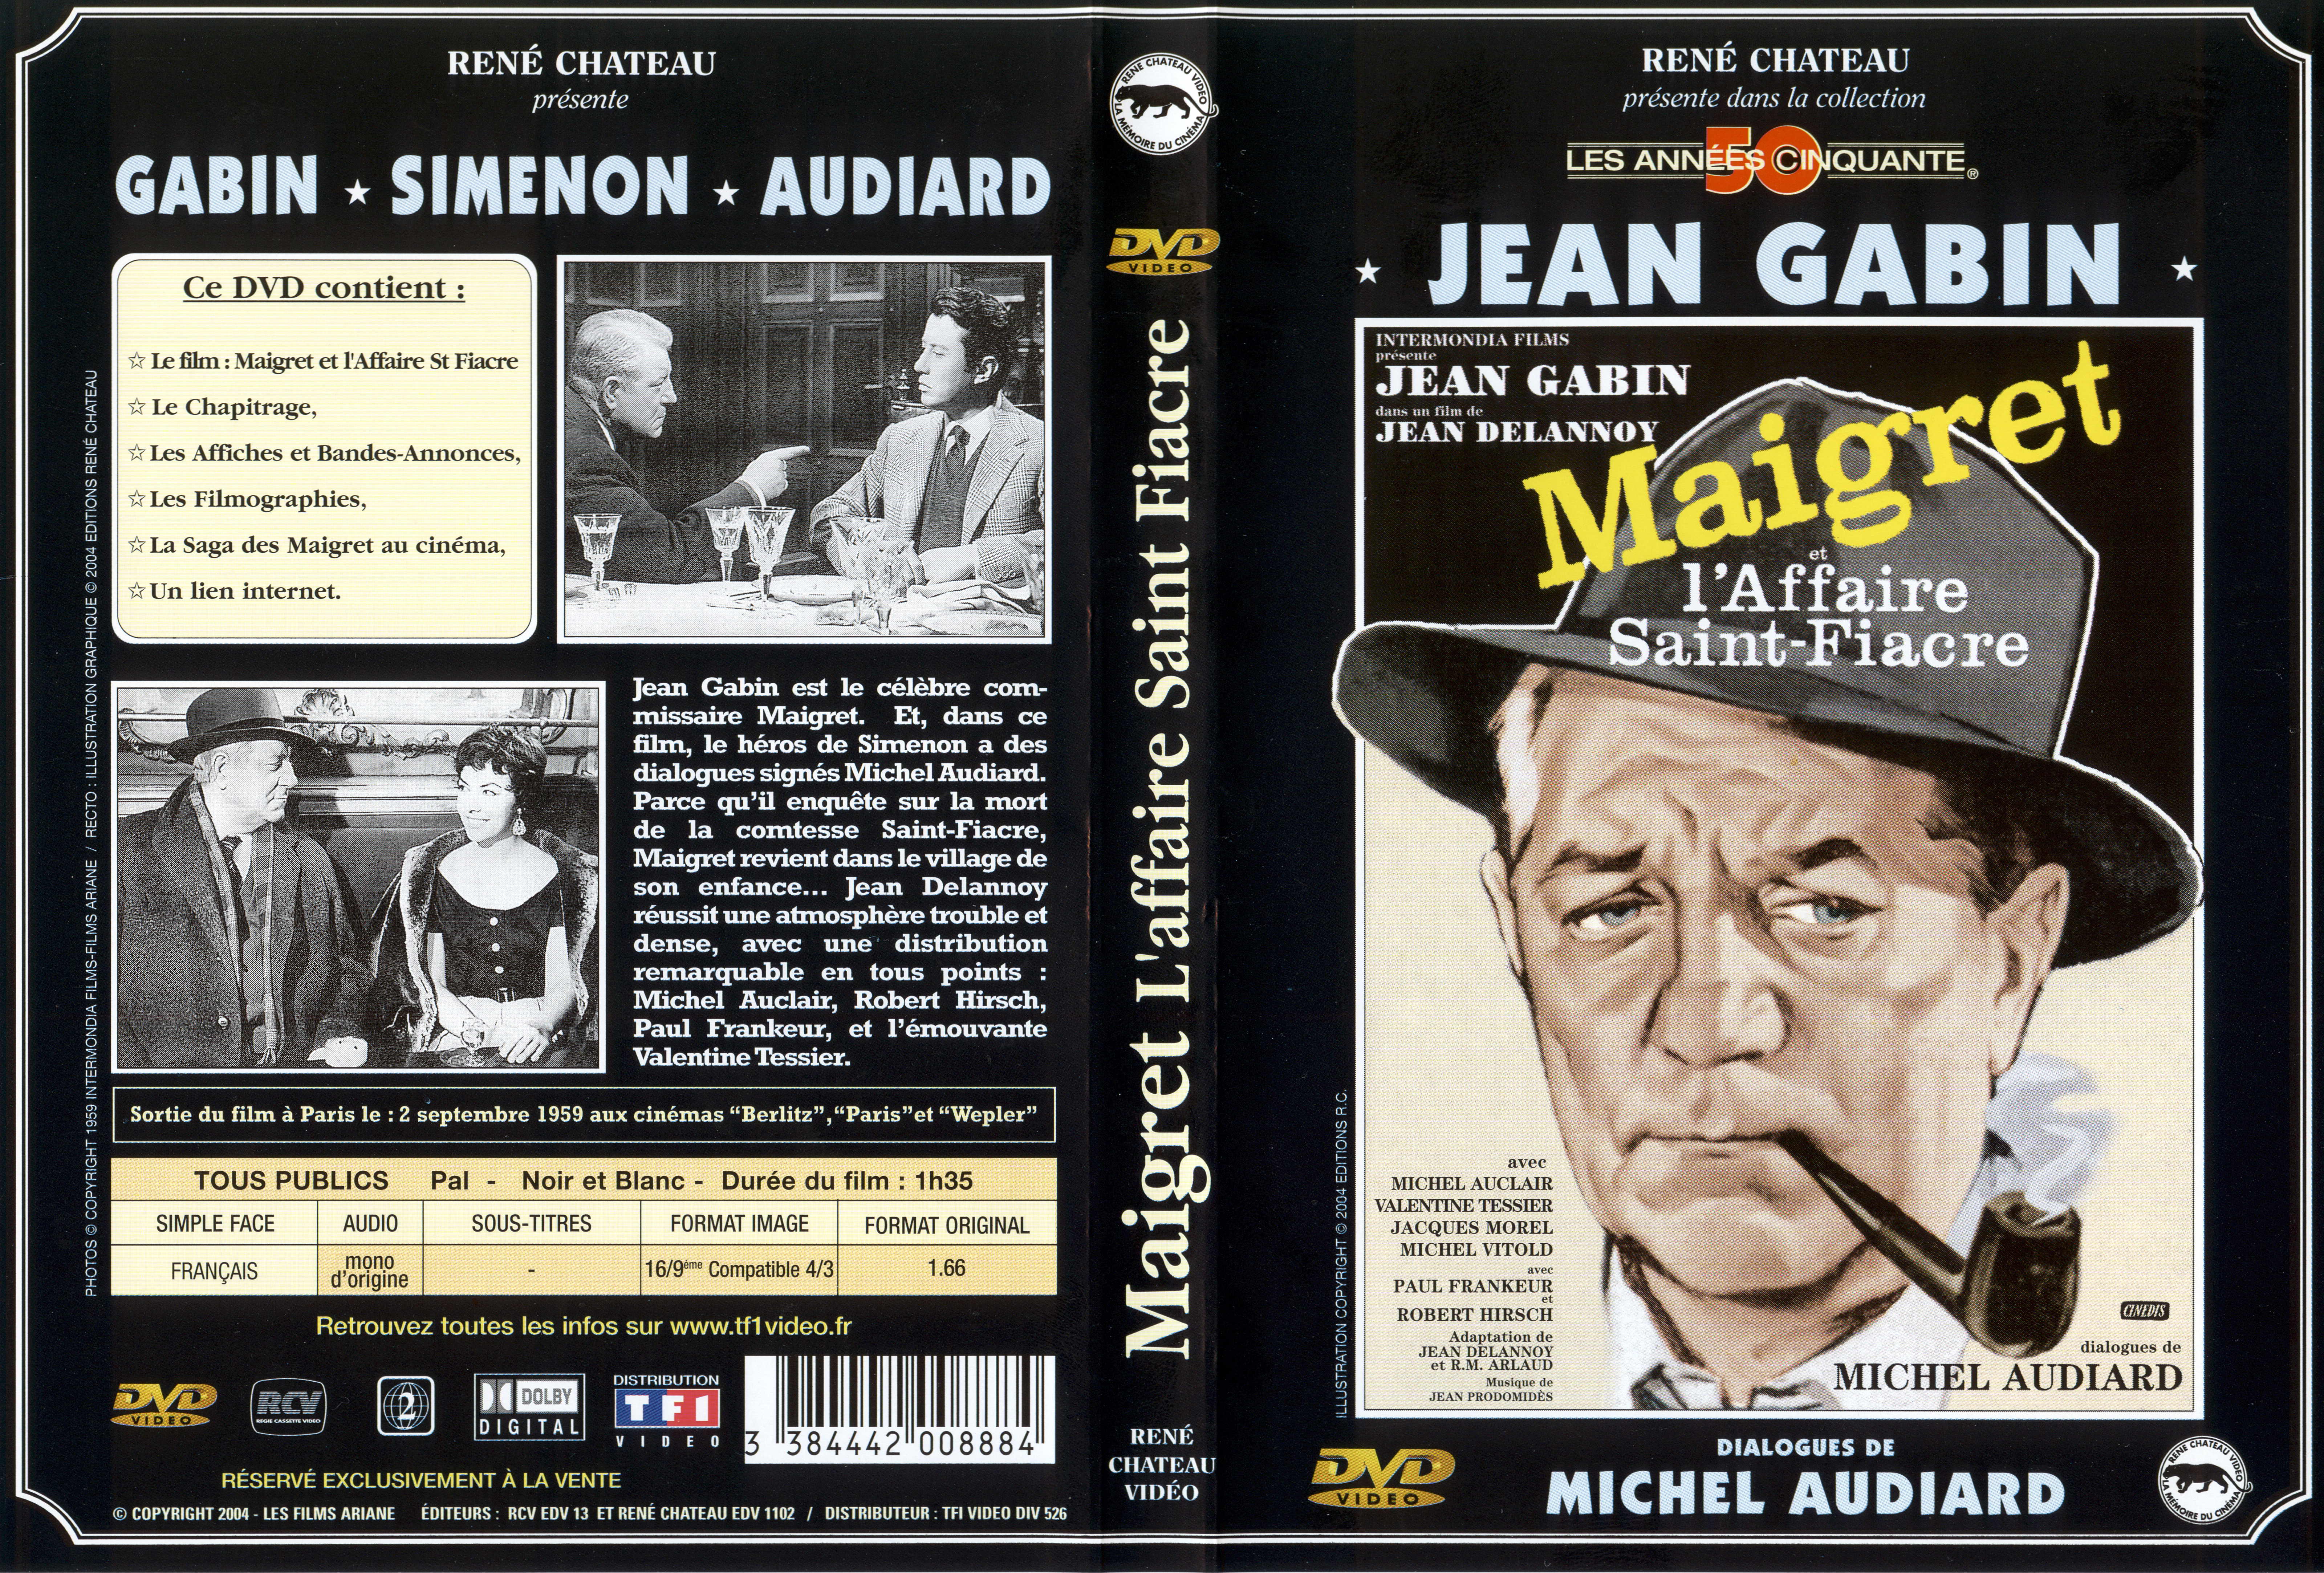 Jaquette DVD Maigret et l